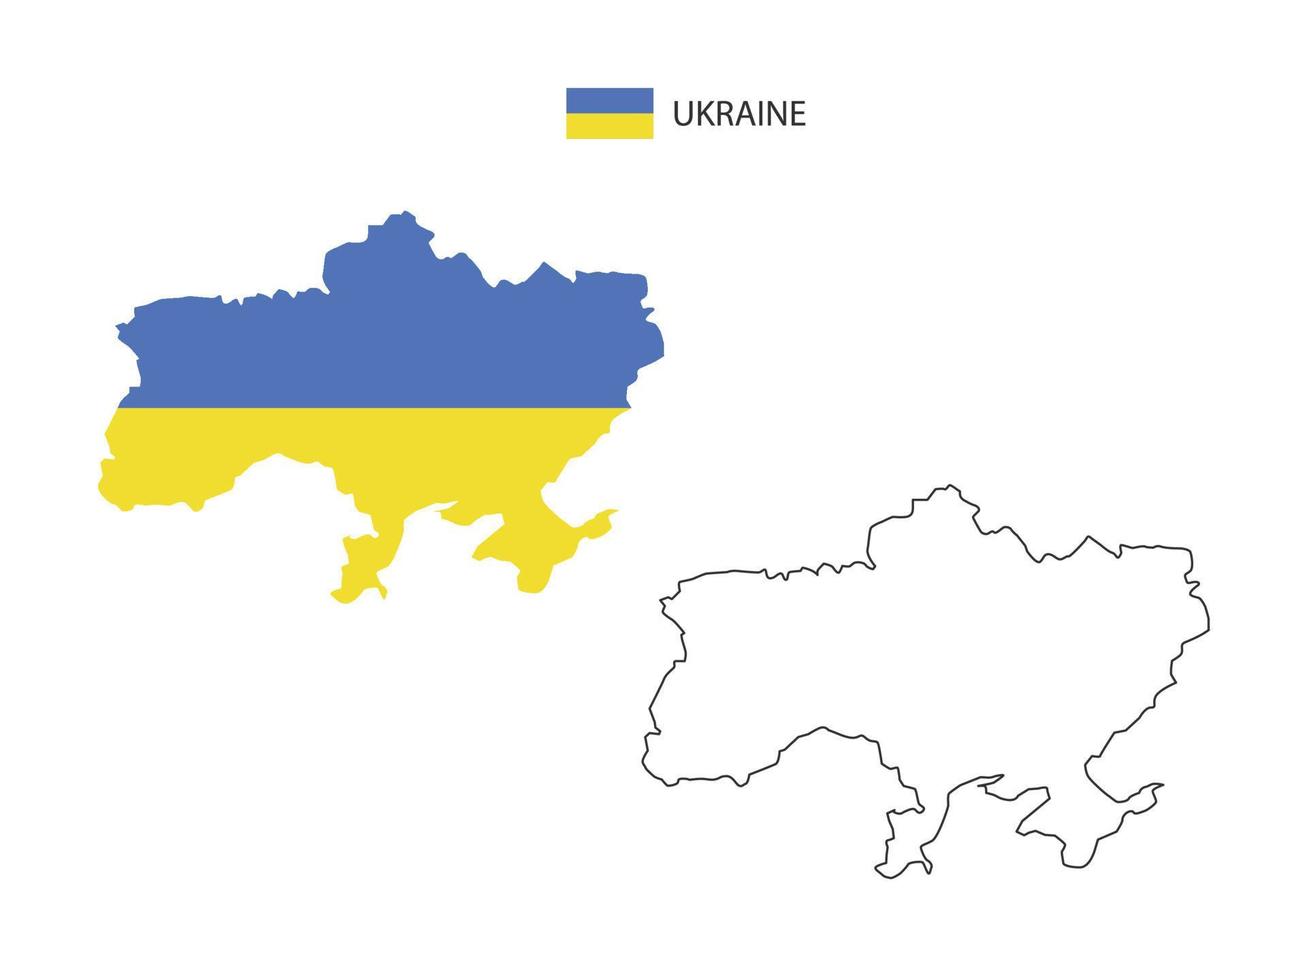 vector de ciudad de mapa de ucrania dividido por estilo de simplicidad de contorno. tiene 2 versiones, versión de línea delgada negra y versión de color de bandera de país. ambos mapas estaban en el fondo blanco.